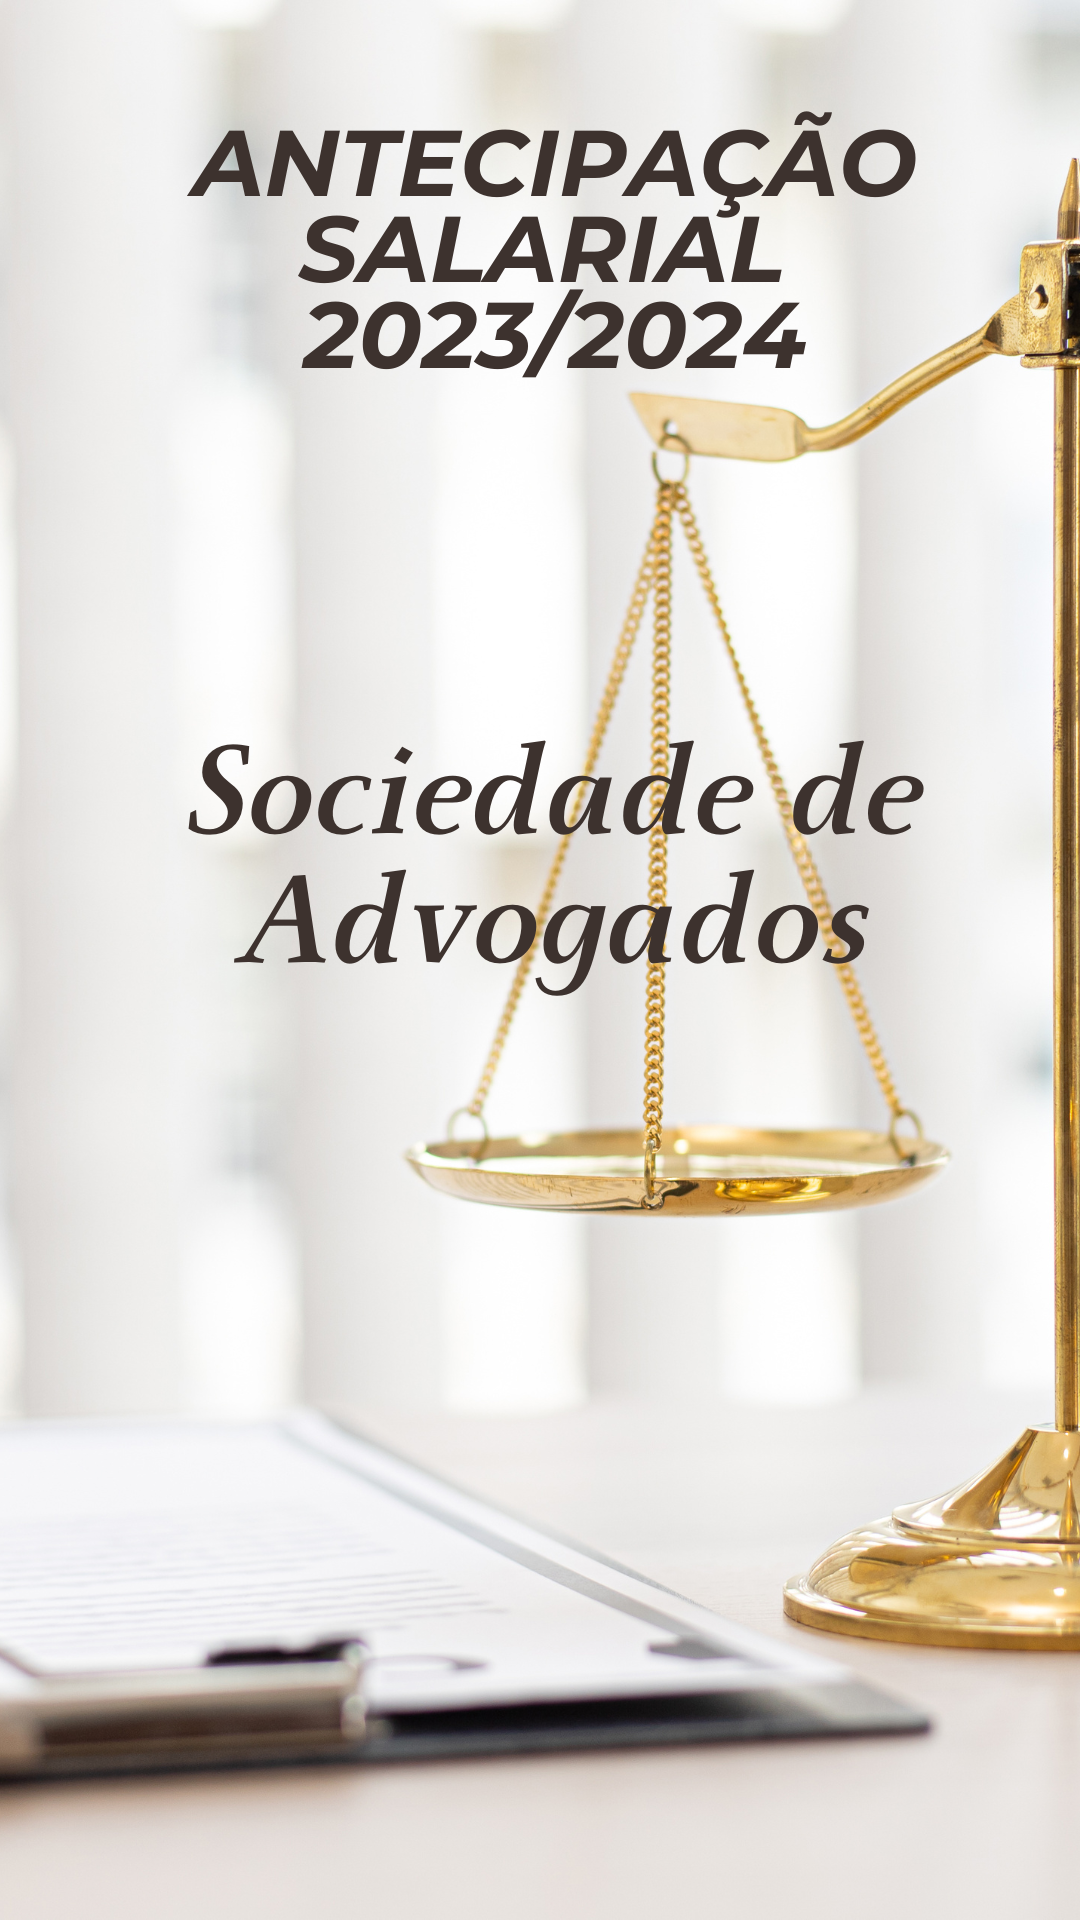 SOCIEDADES DE ADVOGADOS - ANTECIPAÇÃO SALARIAL 2023/2024